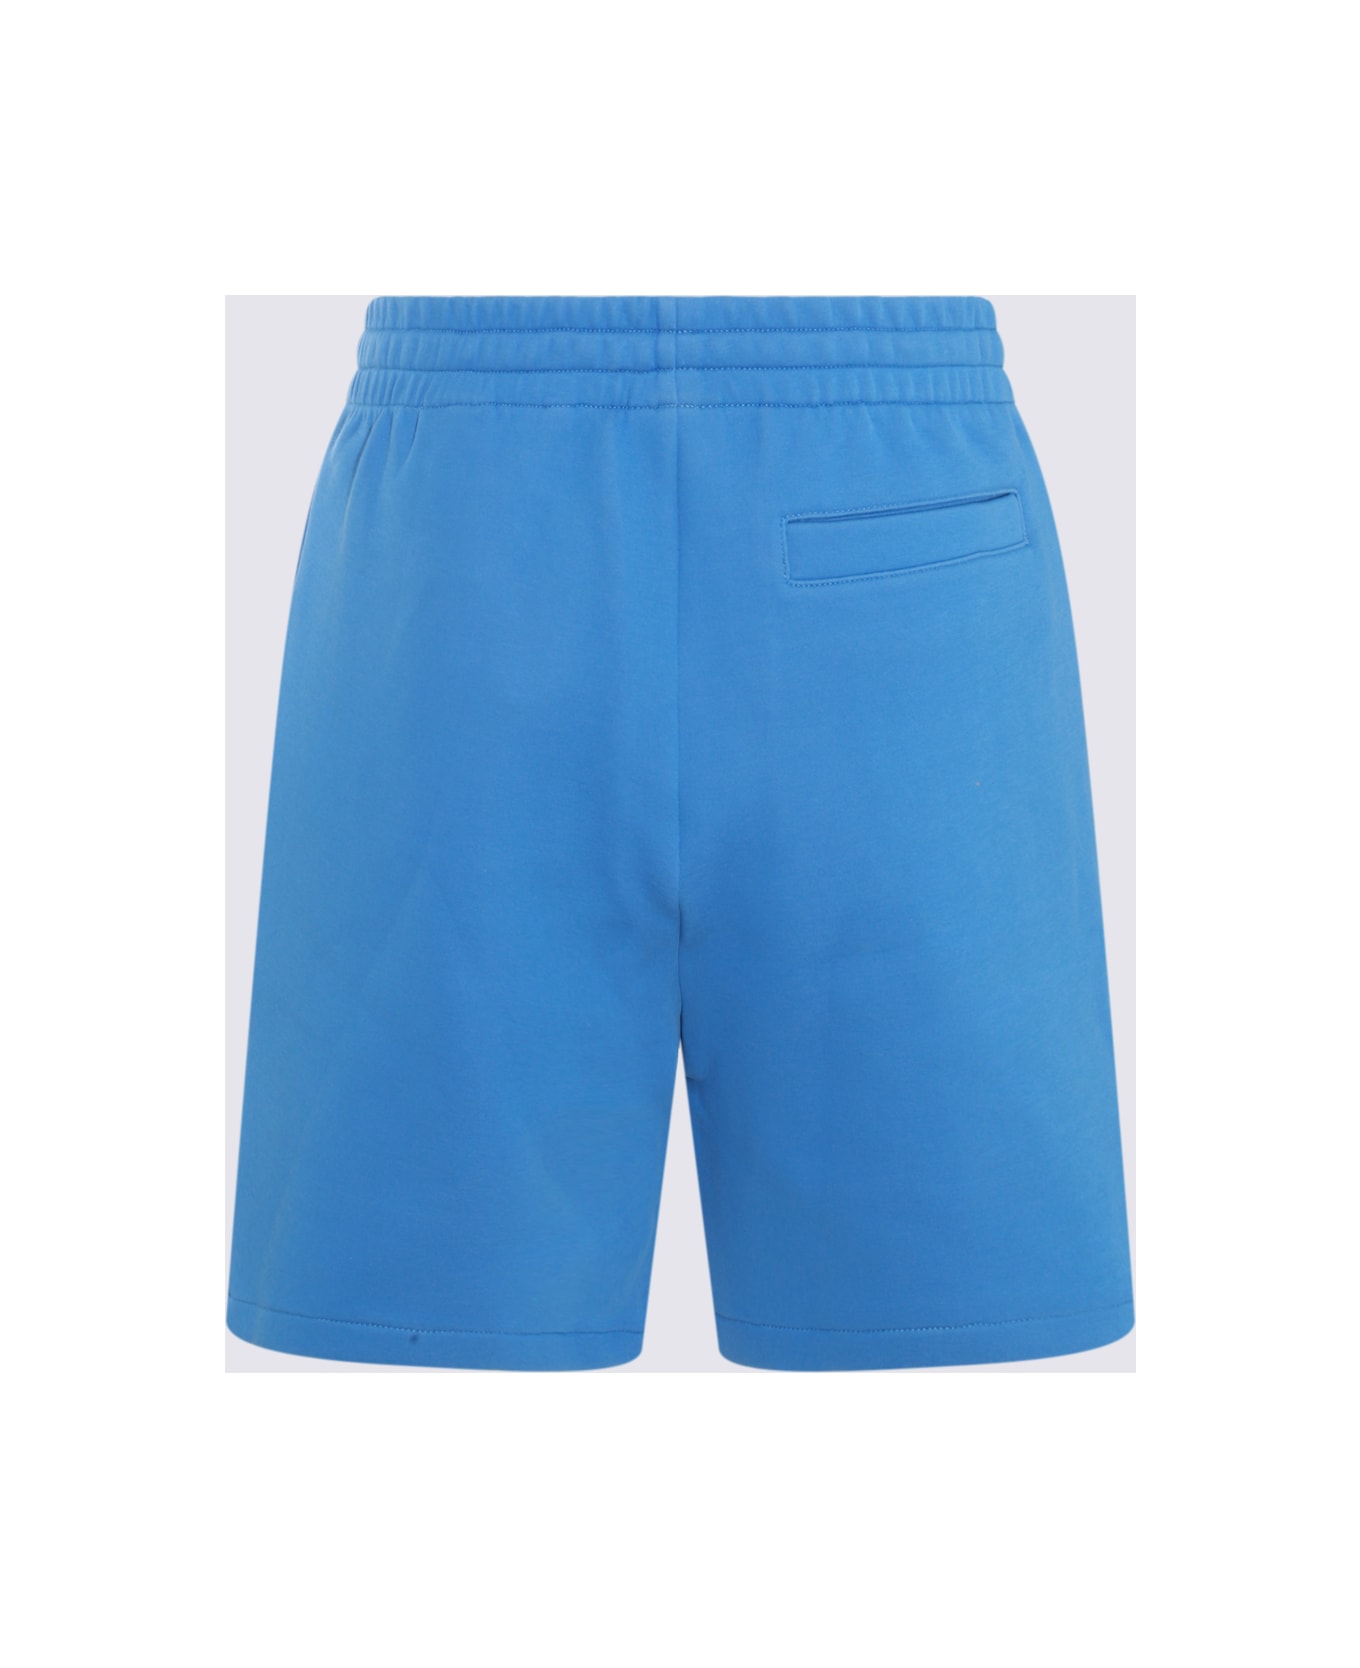 Mackage Blue Cotton Shorts - CELESTIAL BLUE